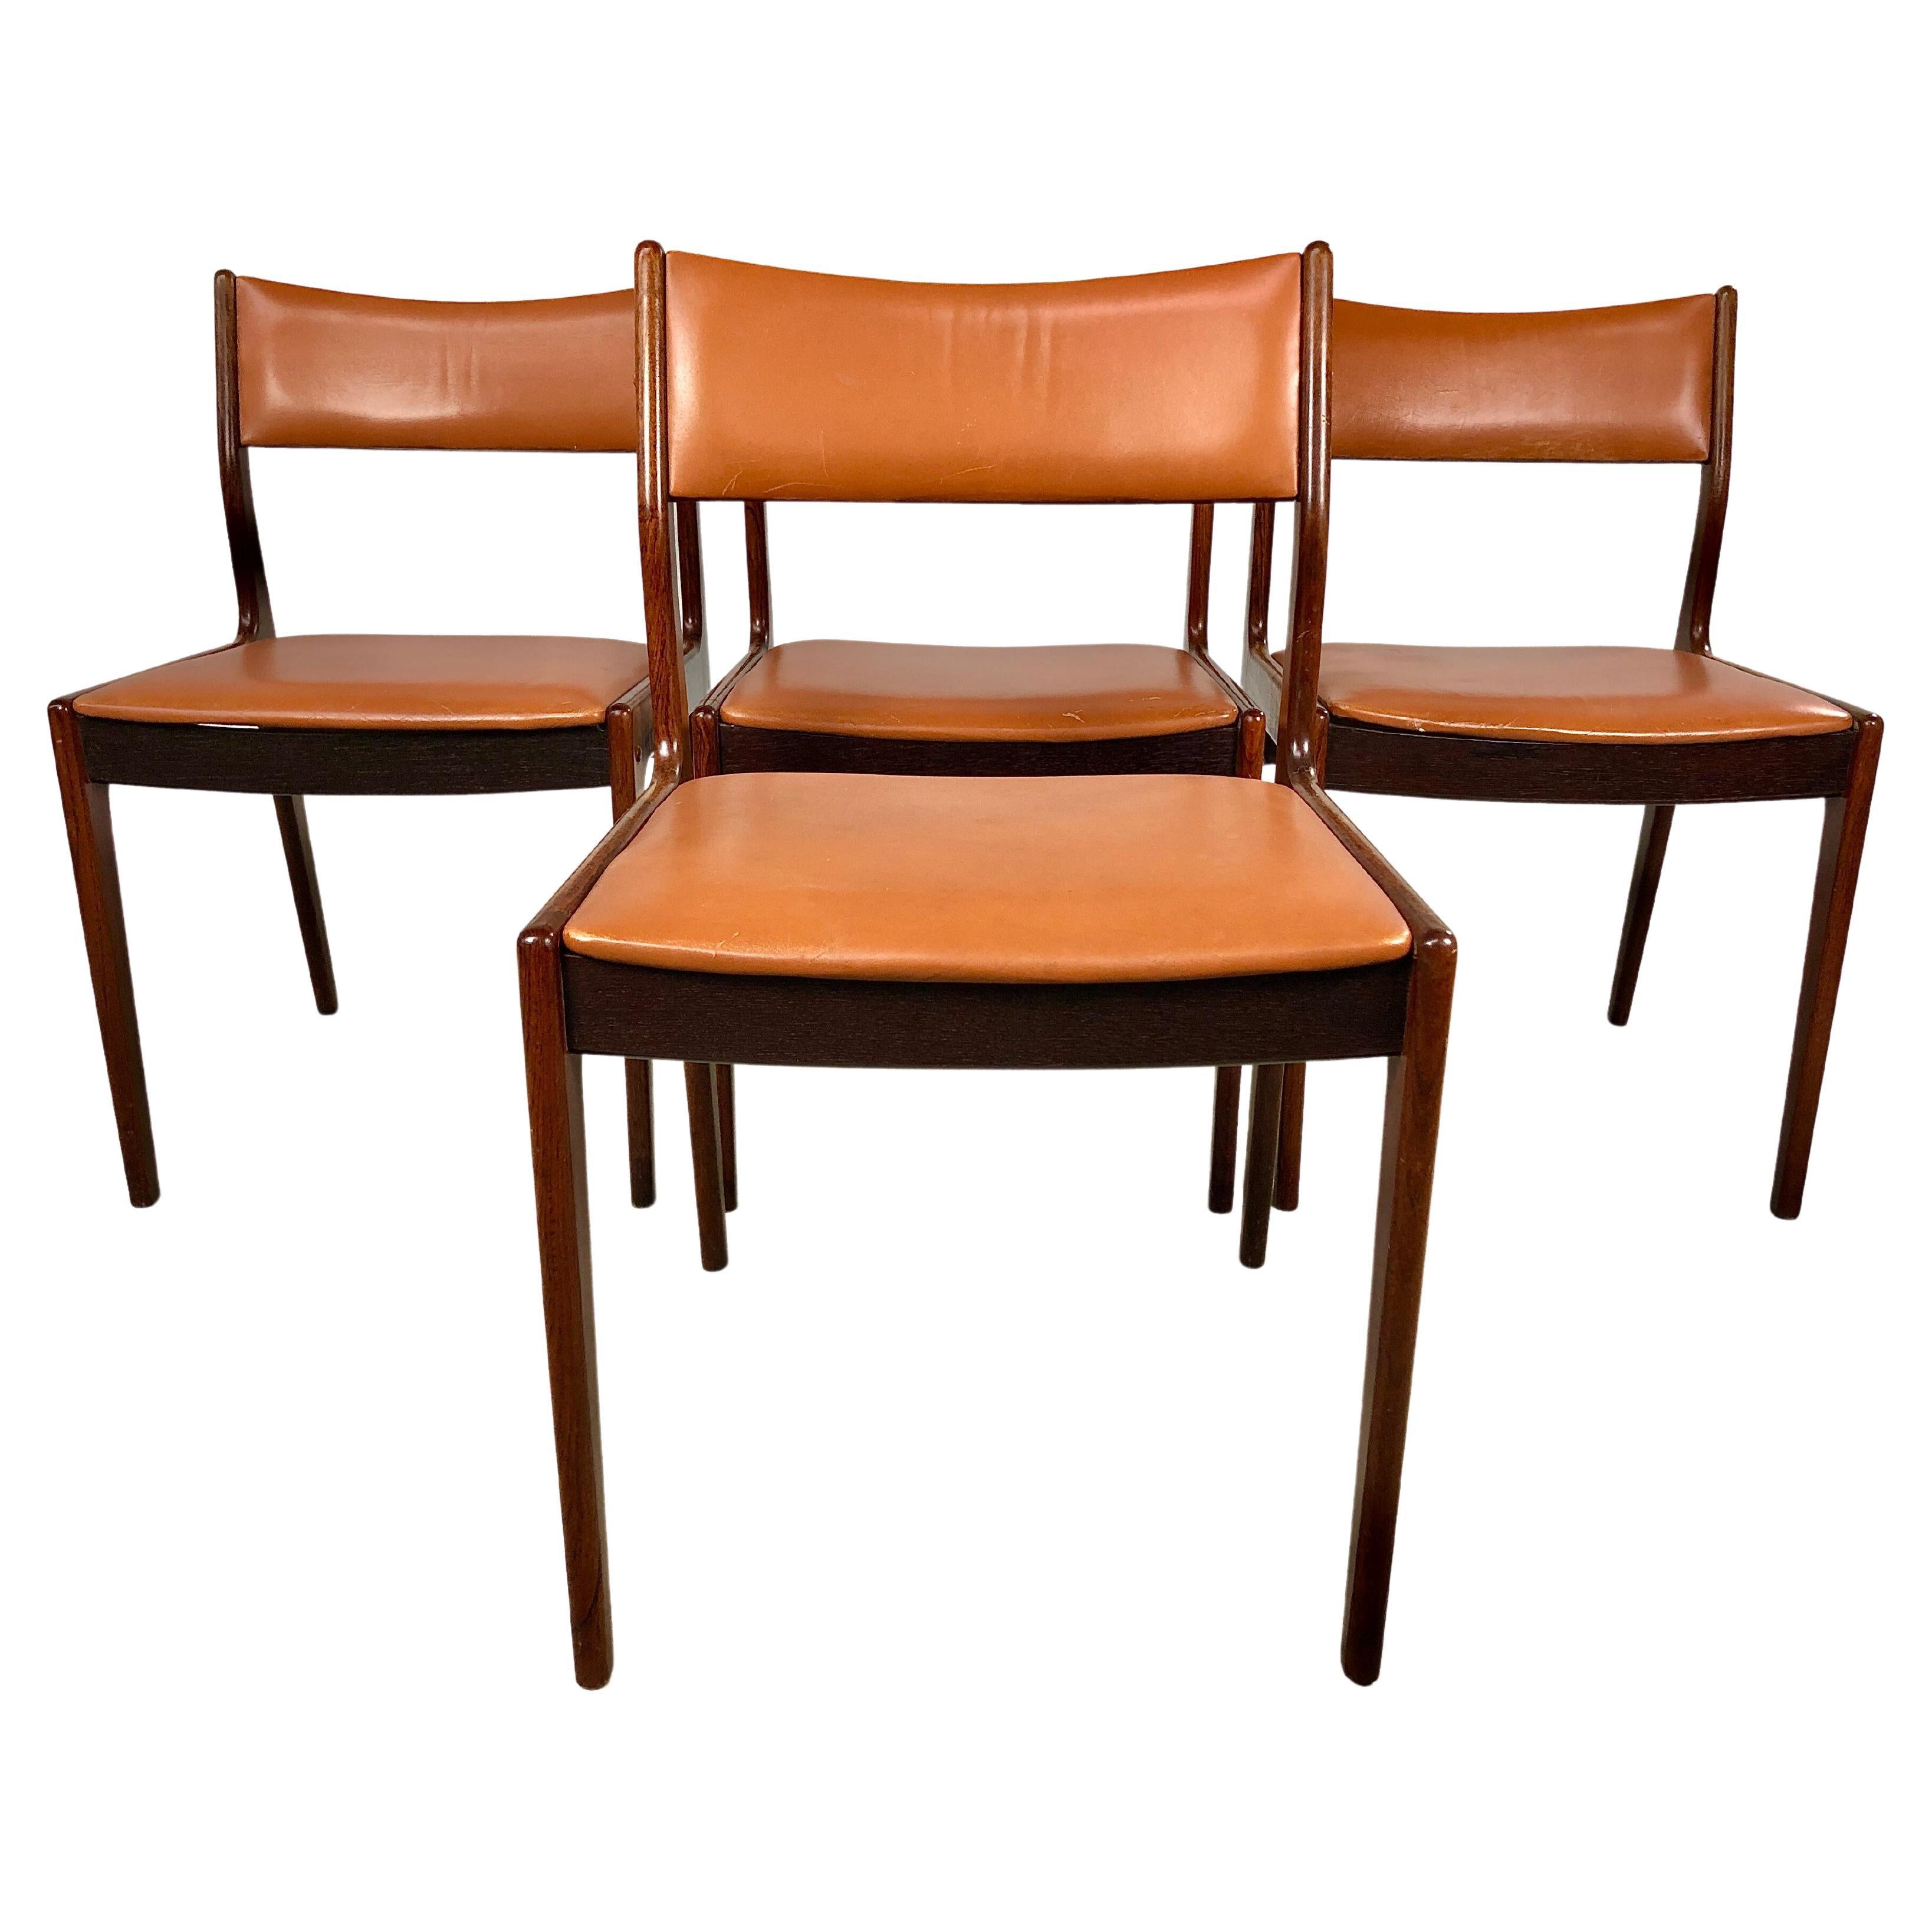 Chaises de salle à manger restaurées Johannes Andersen en bois de rose, retapissage personnalisé inclus